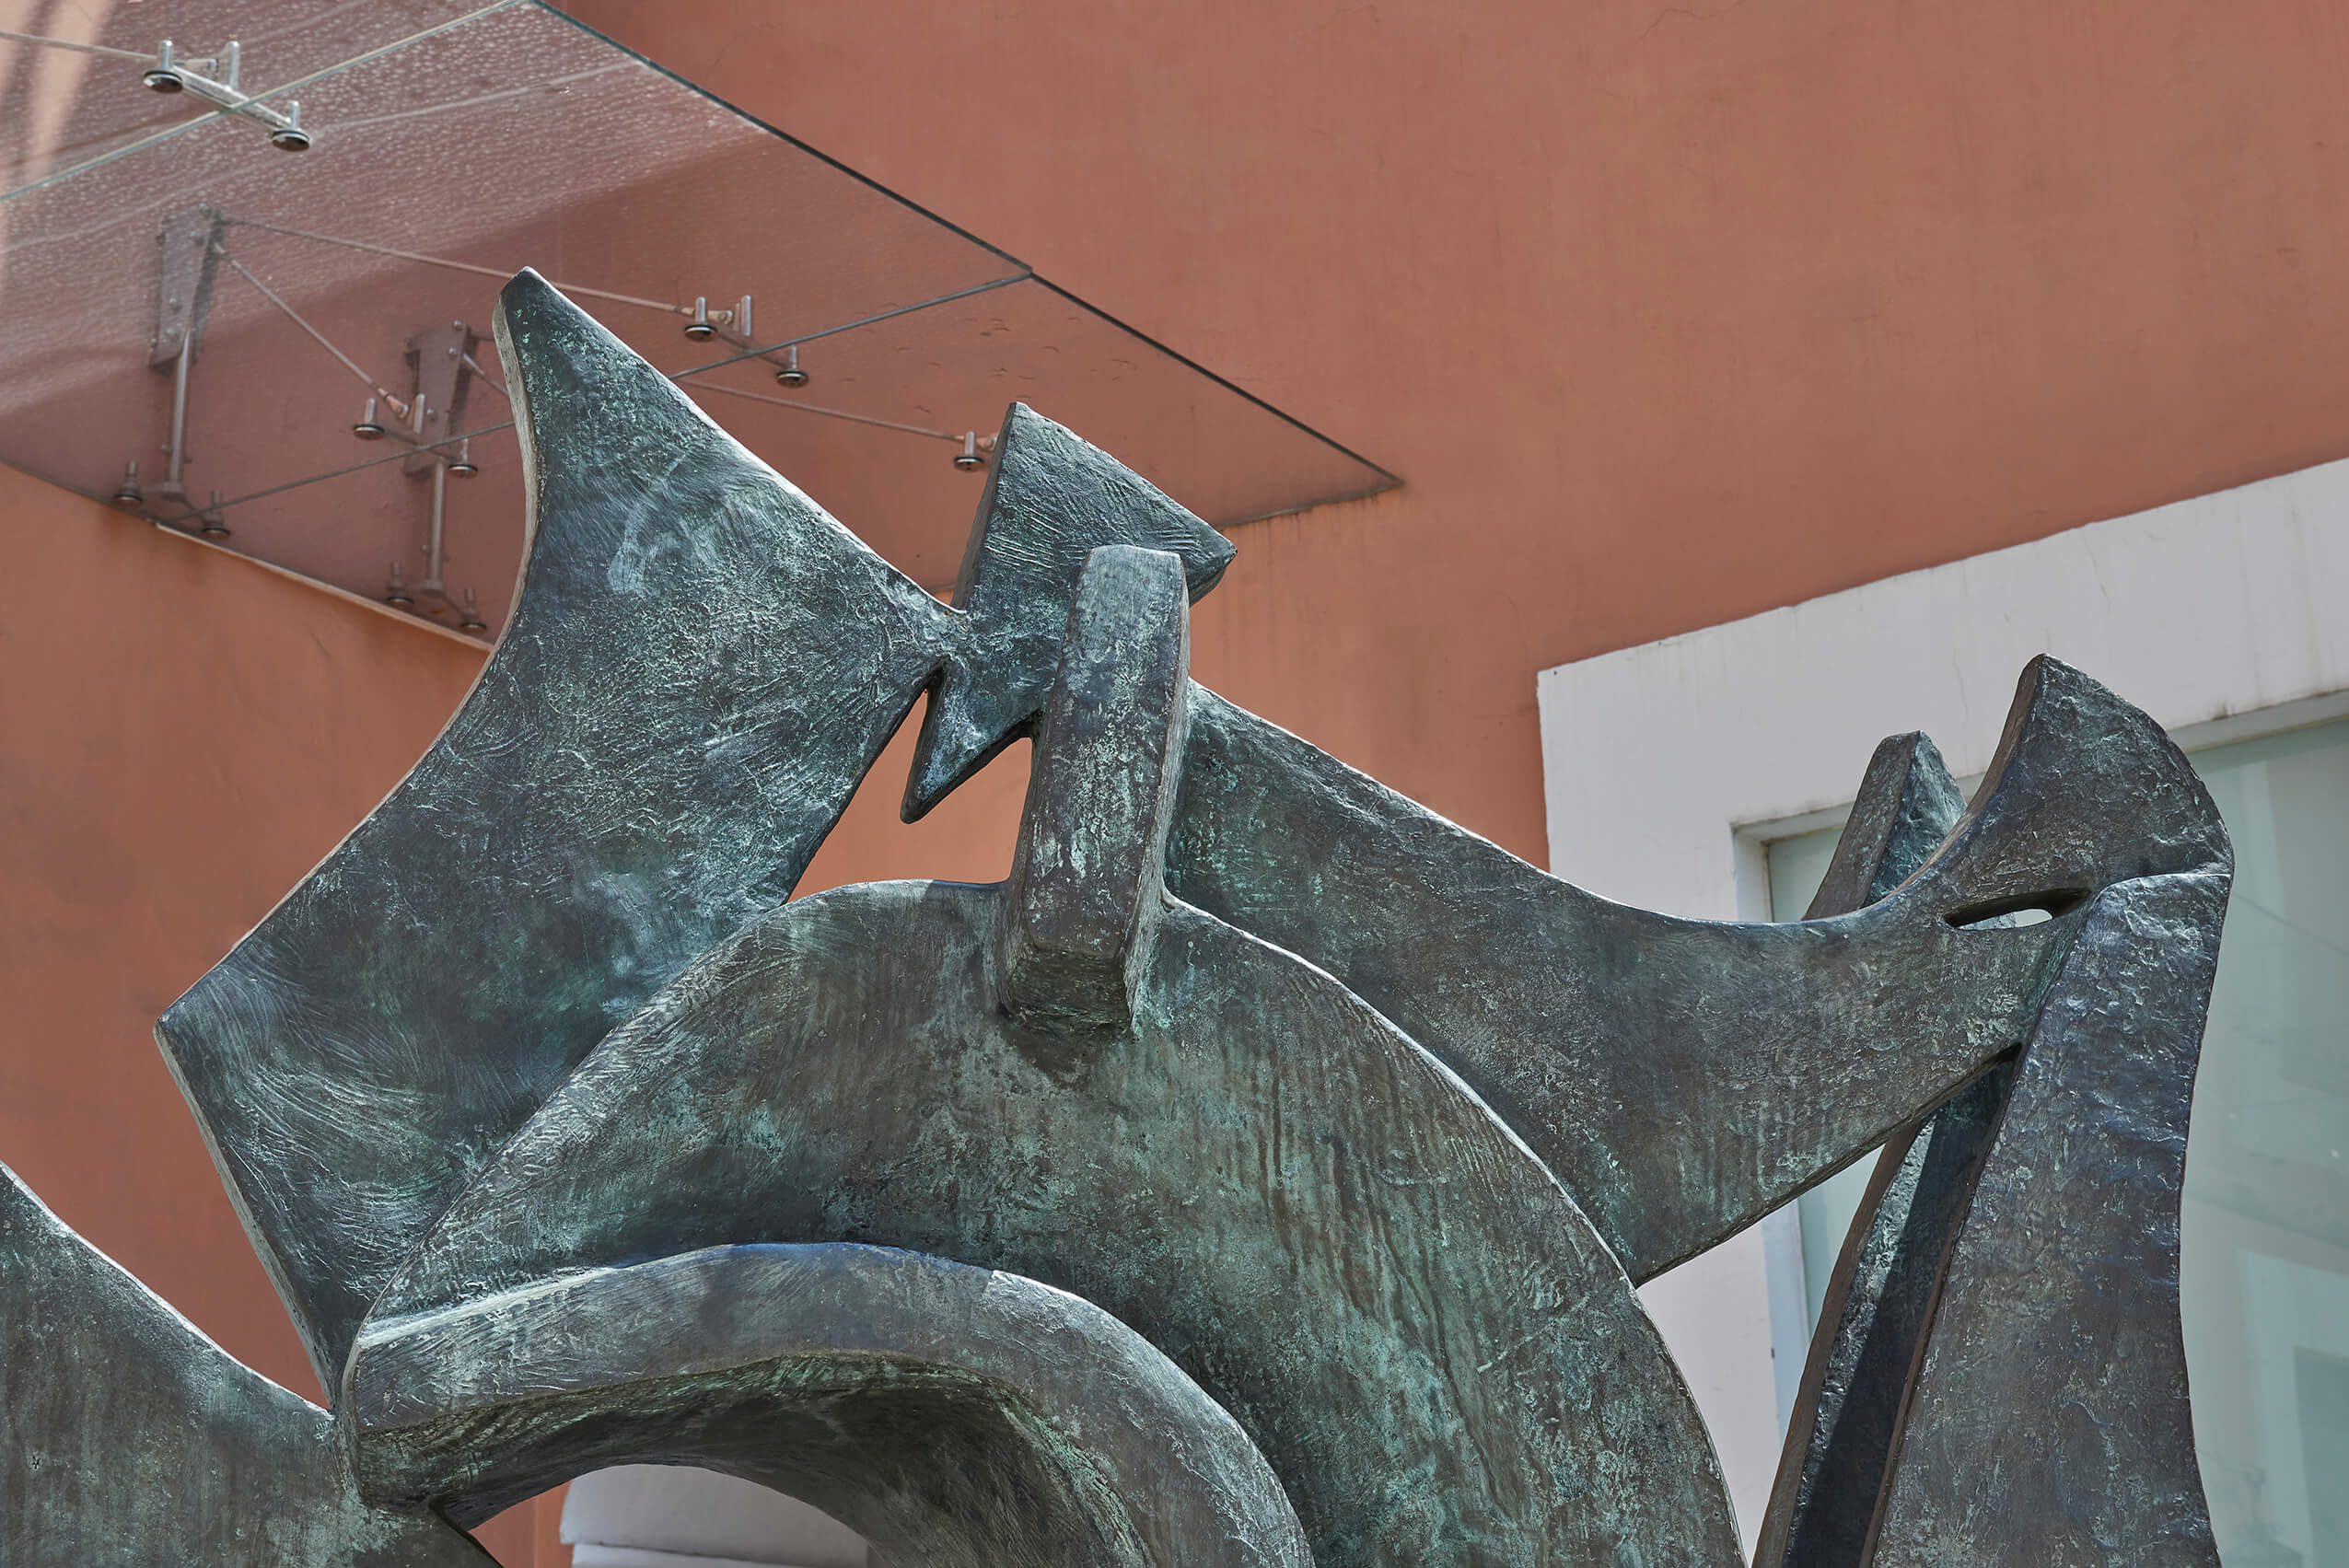 Caracol | El tiempo en las cosas II. Salas de Arte Contemporáneo | Museo Amparo, Puebla